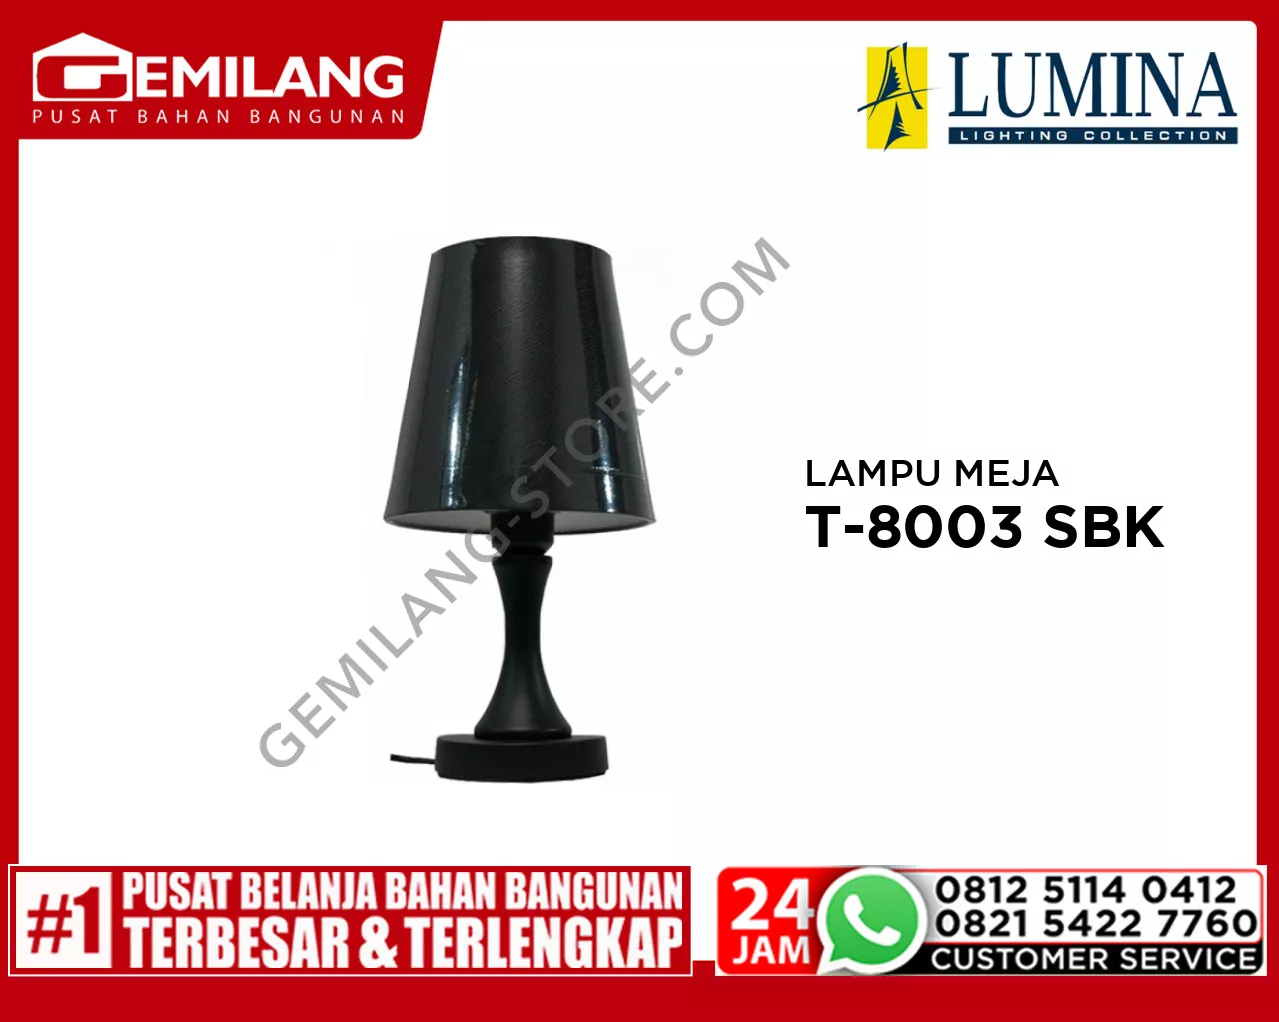 LAMPU MEJA T-8003 SBK